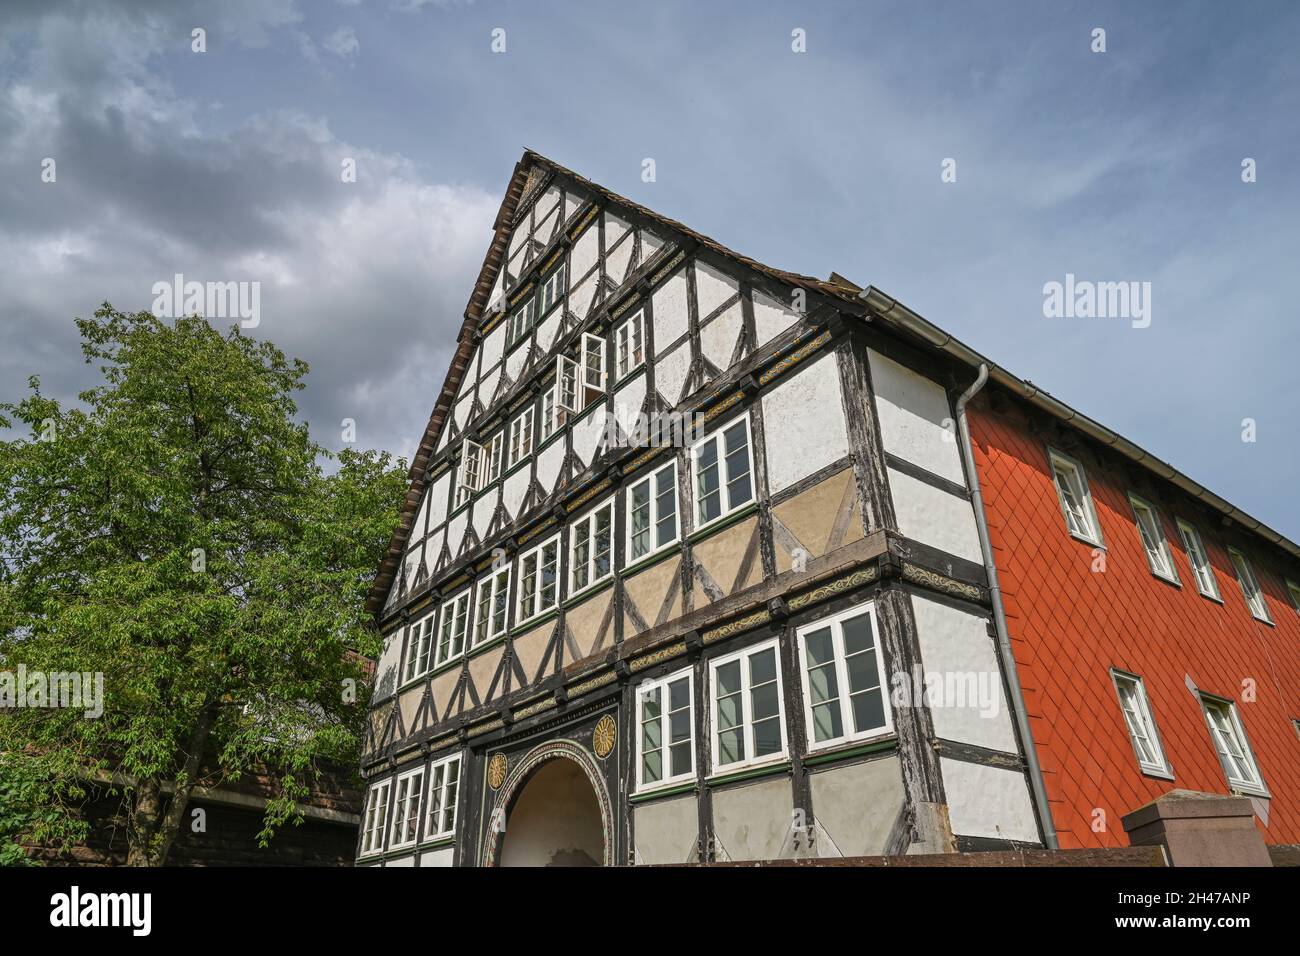 Altes Fährhaus / Zollhaus von 1662, Holzminden, Niedersachsen, Deutschland Foto Stock